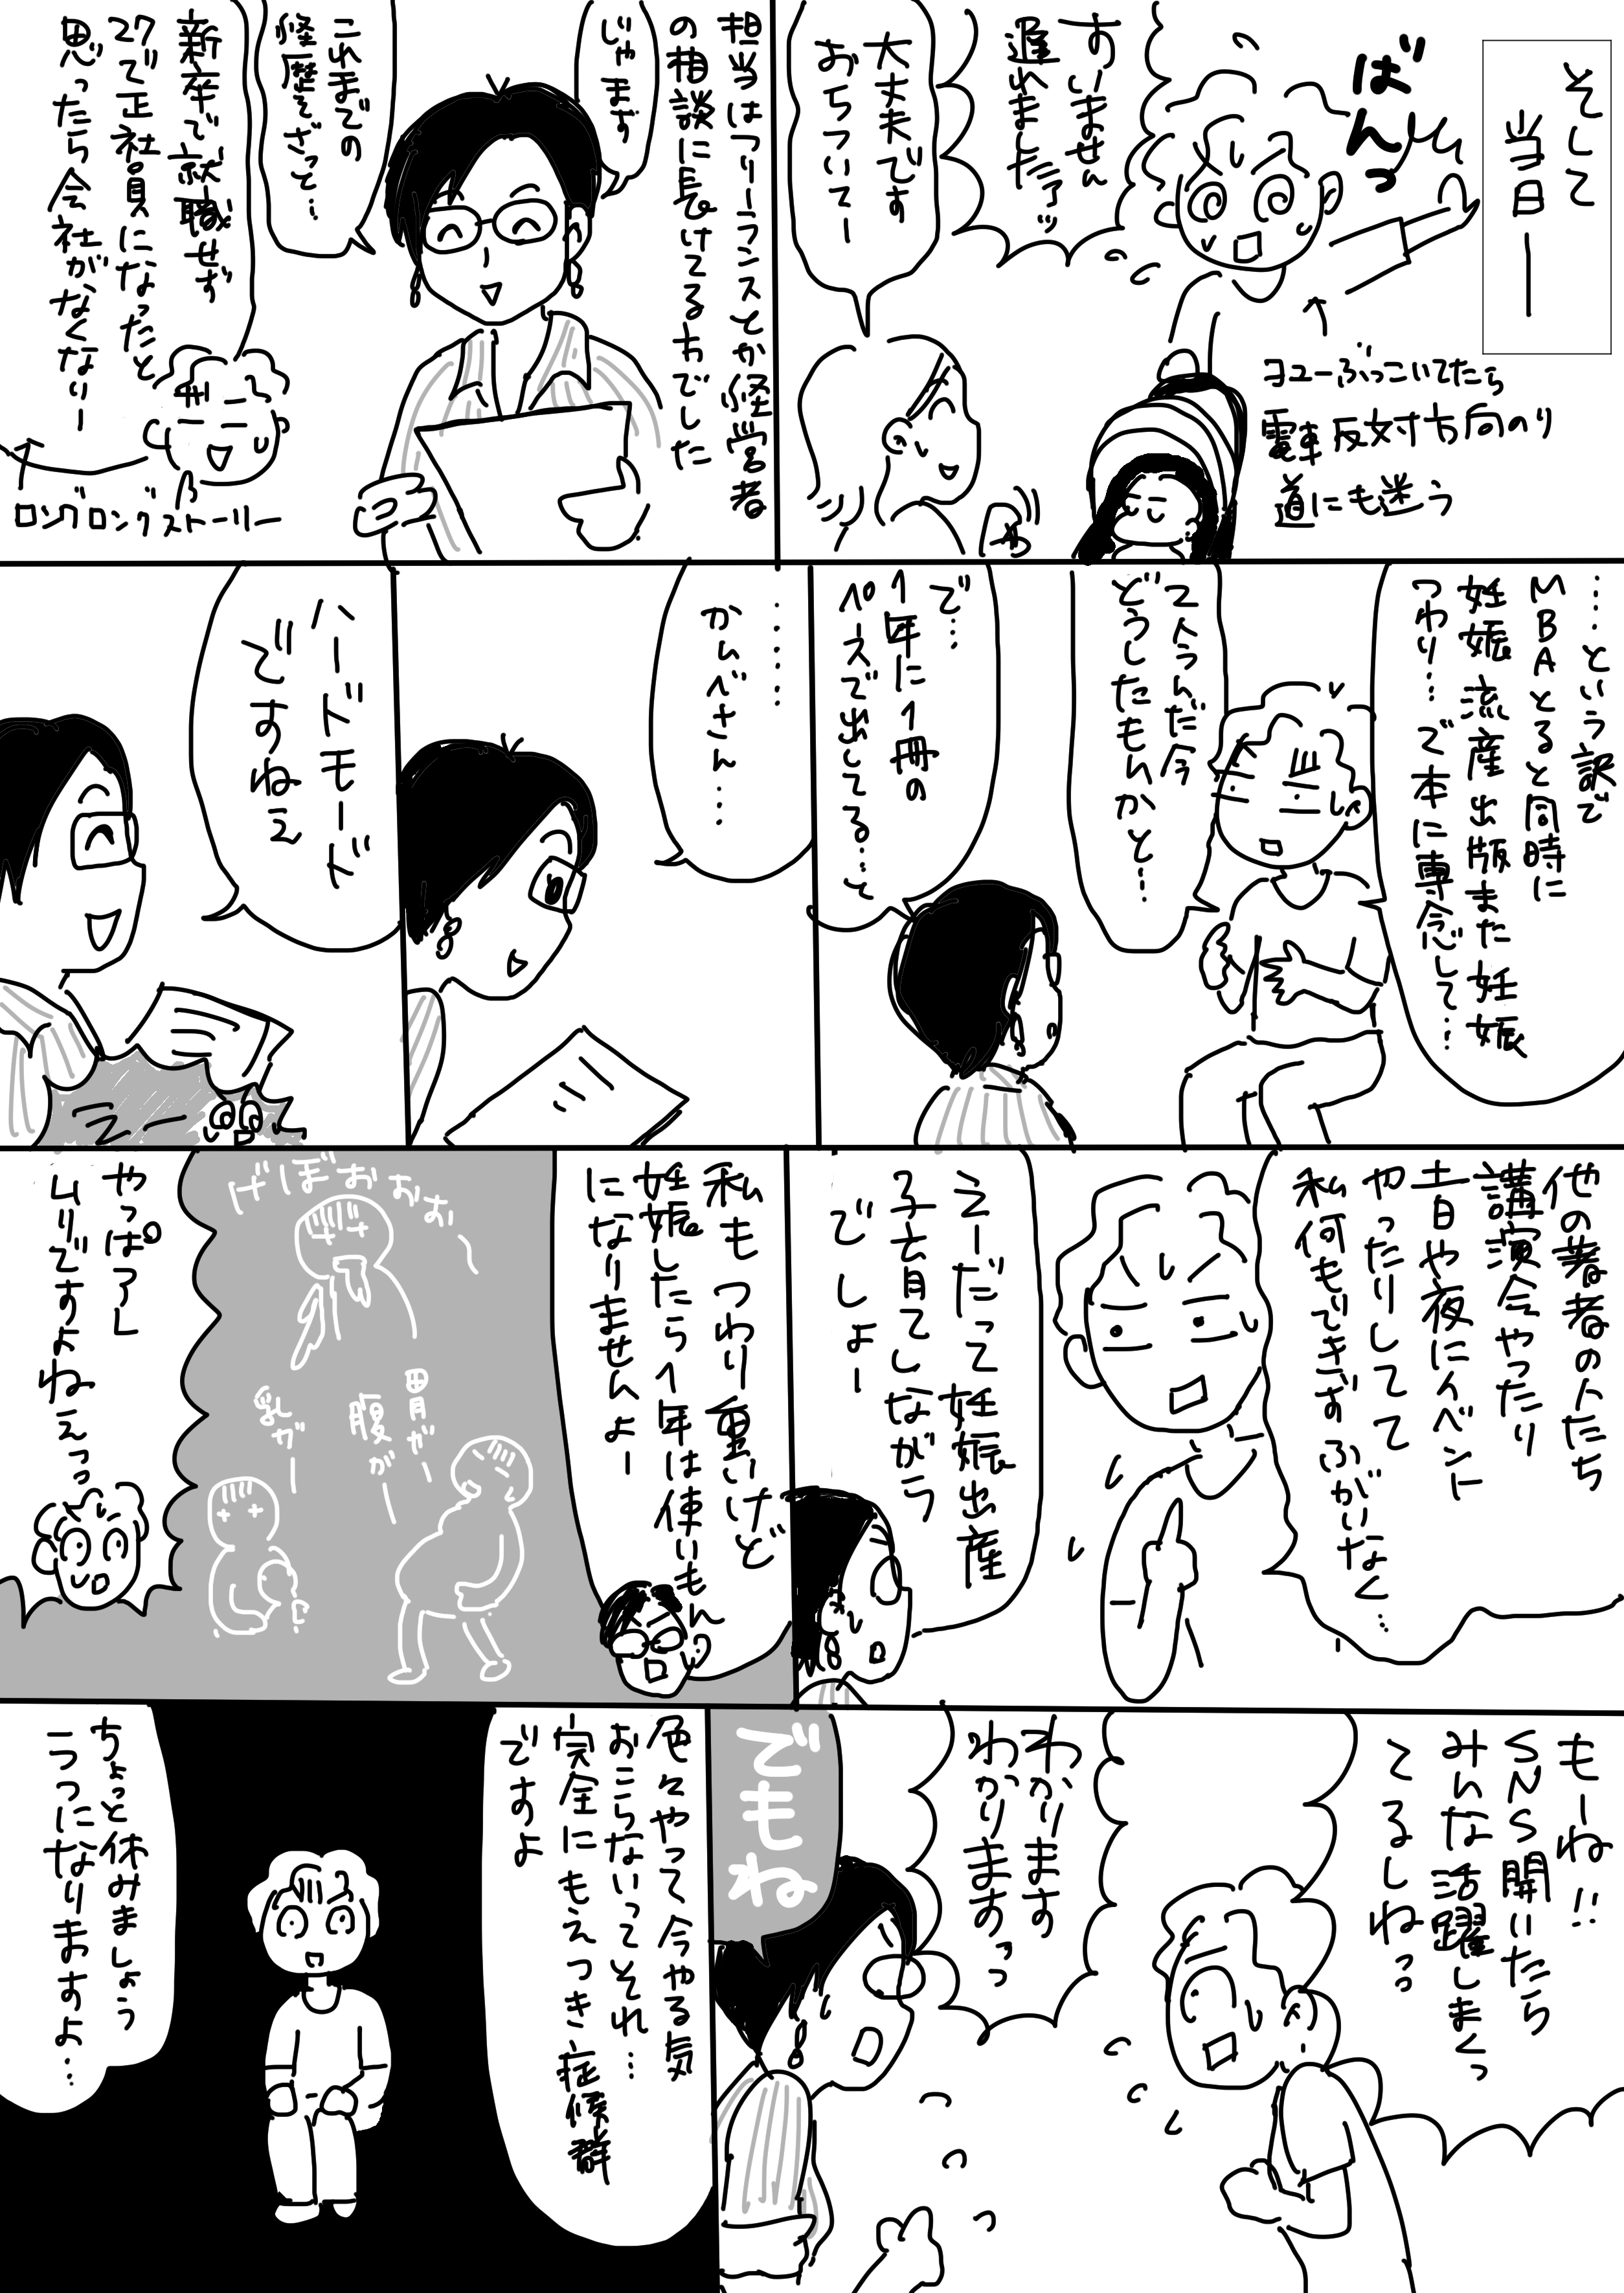 コミック9_出力_002